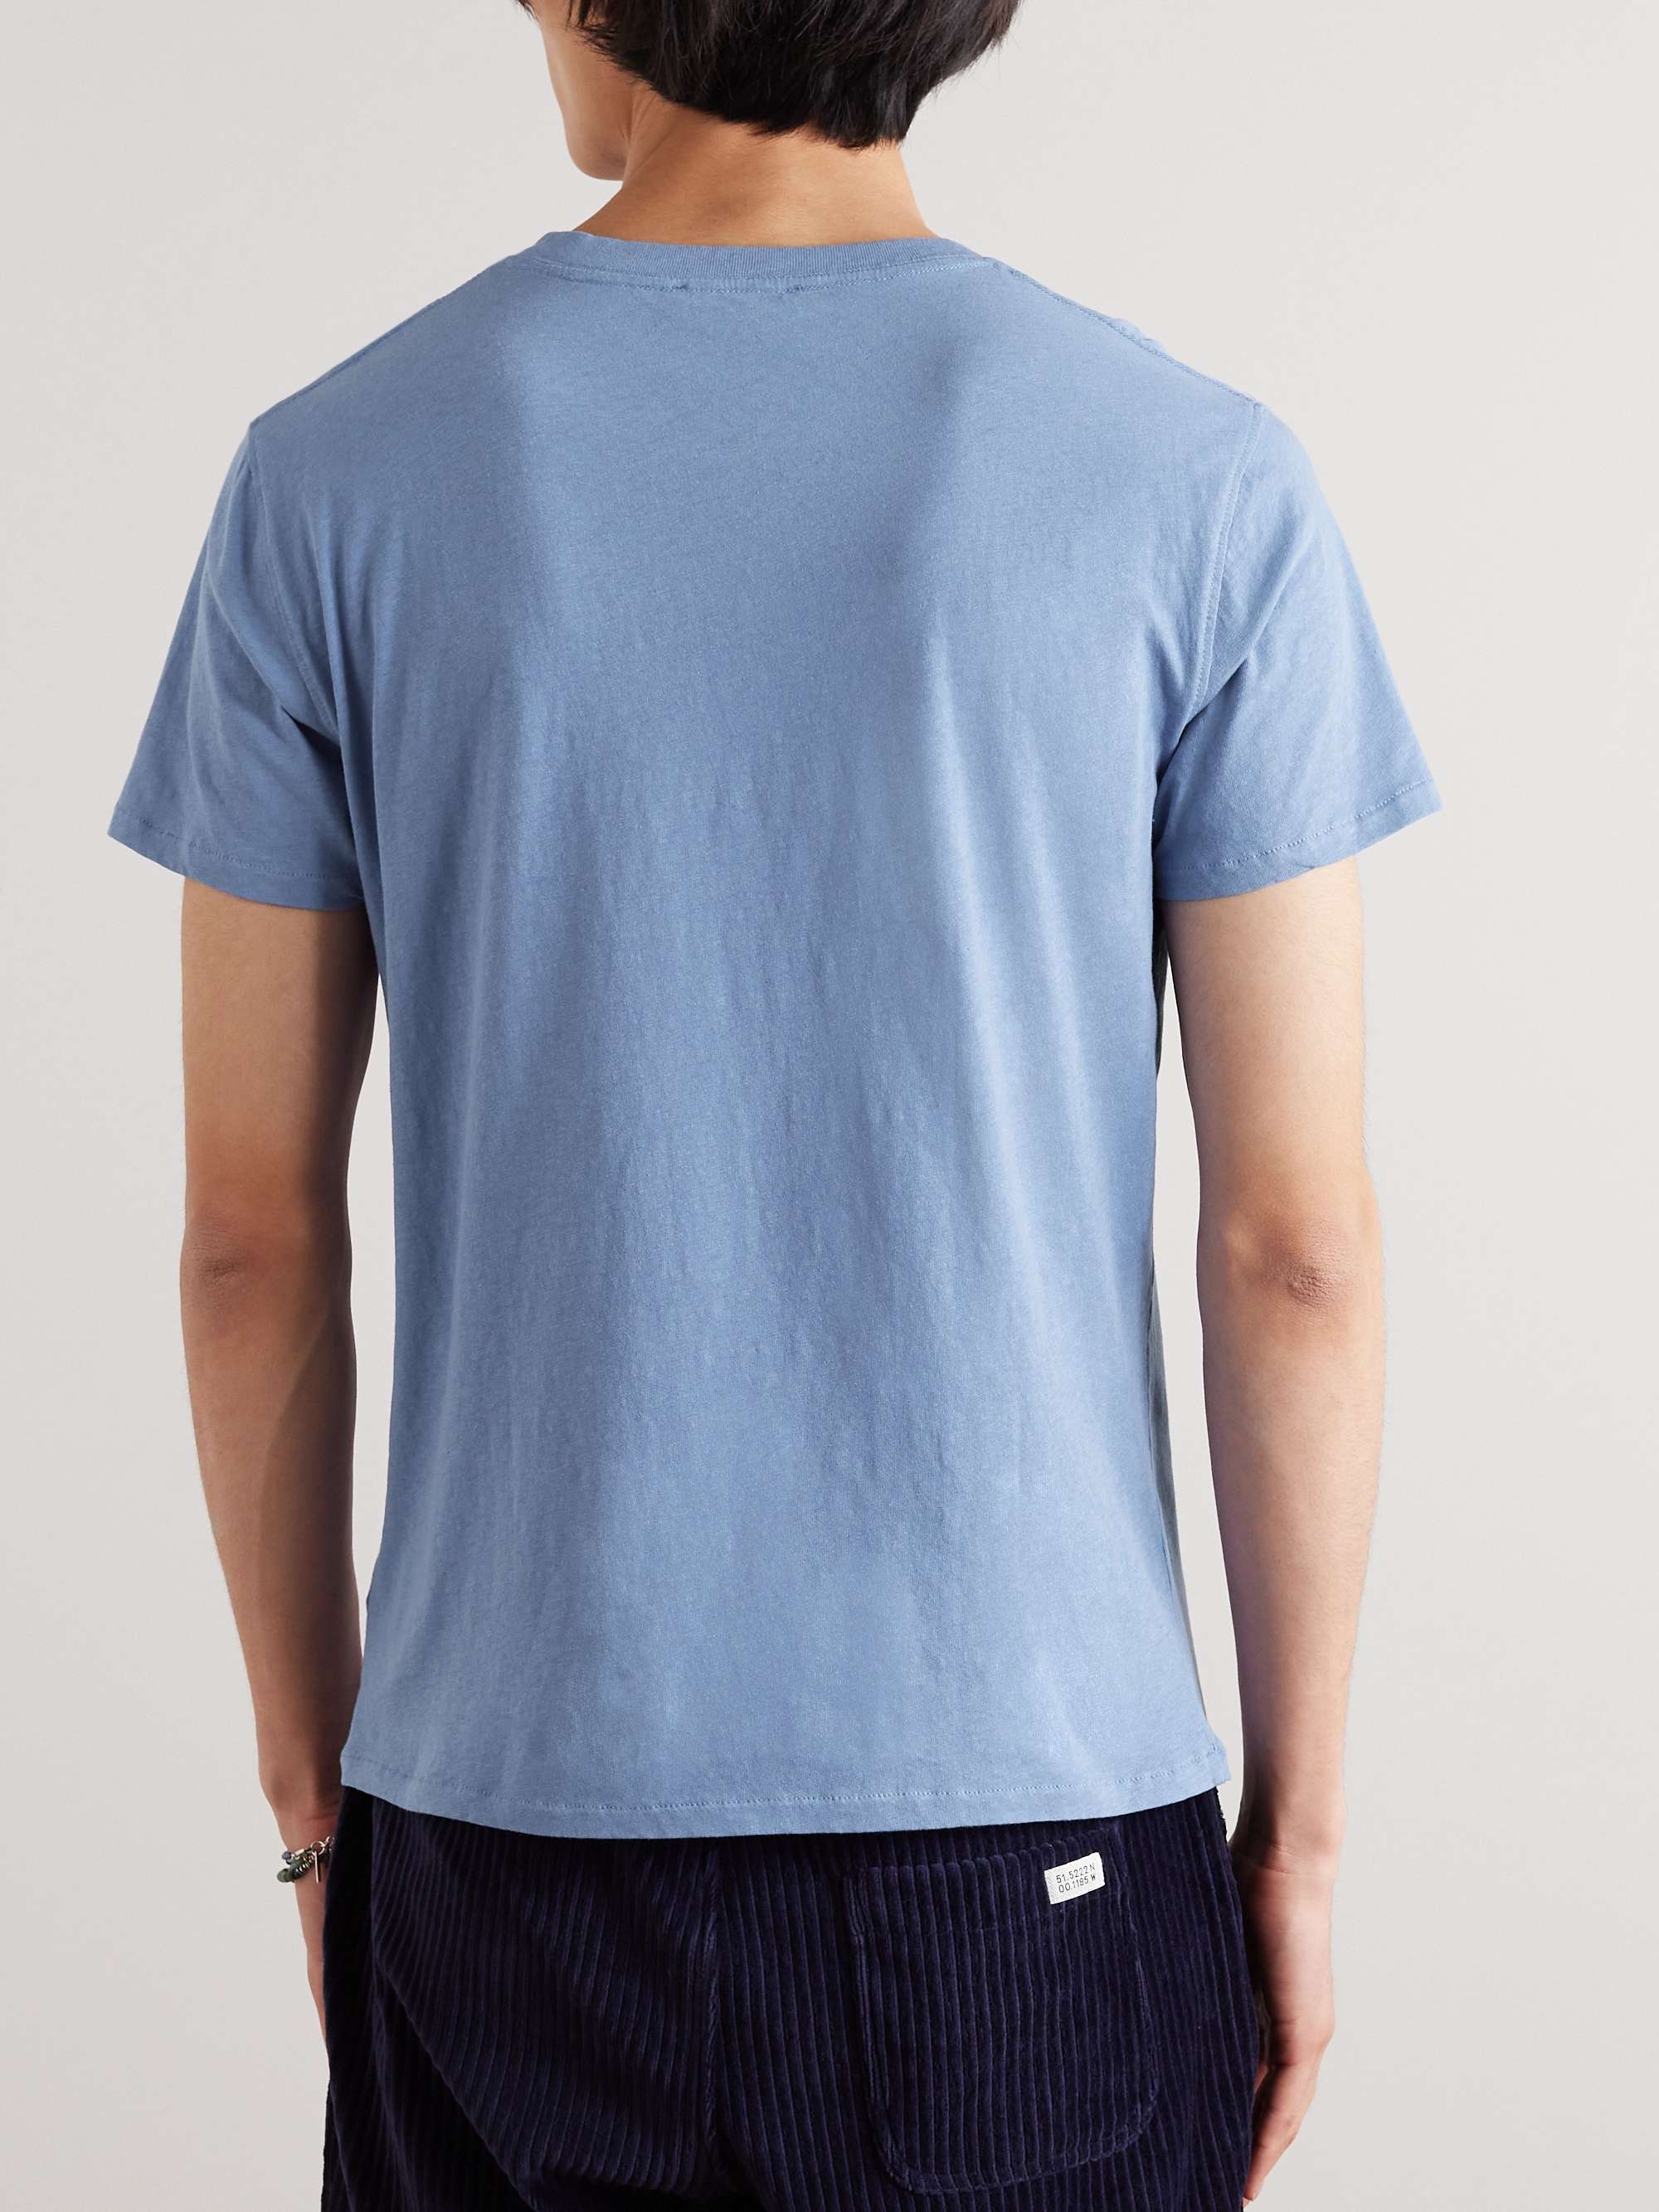 FRESCOBOL CARIOCA Lucio Cotton and Linen-Blend Jersey T-Shirt